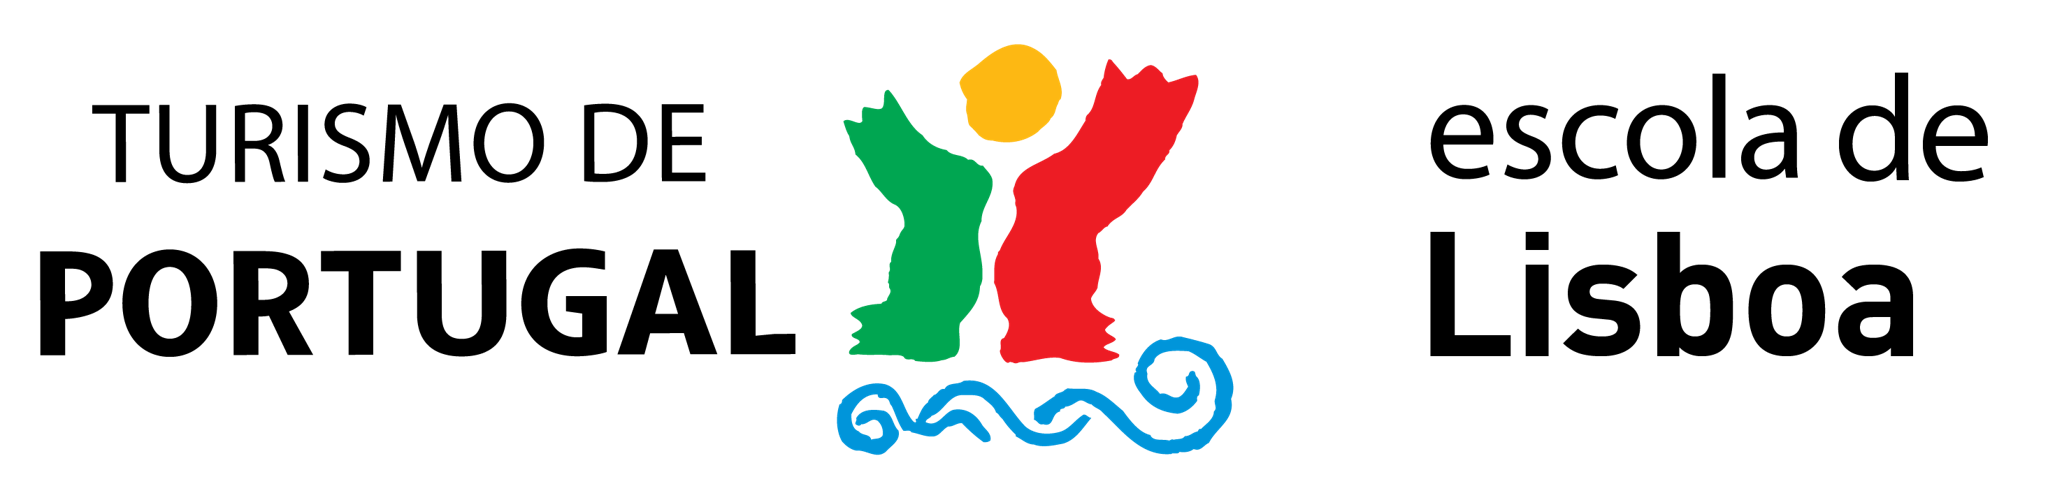 Logotipo lisboa 03 0